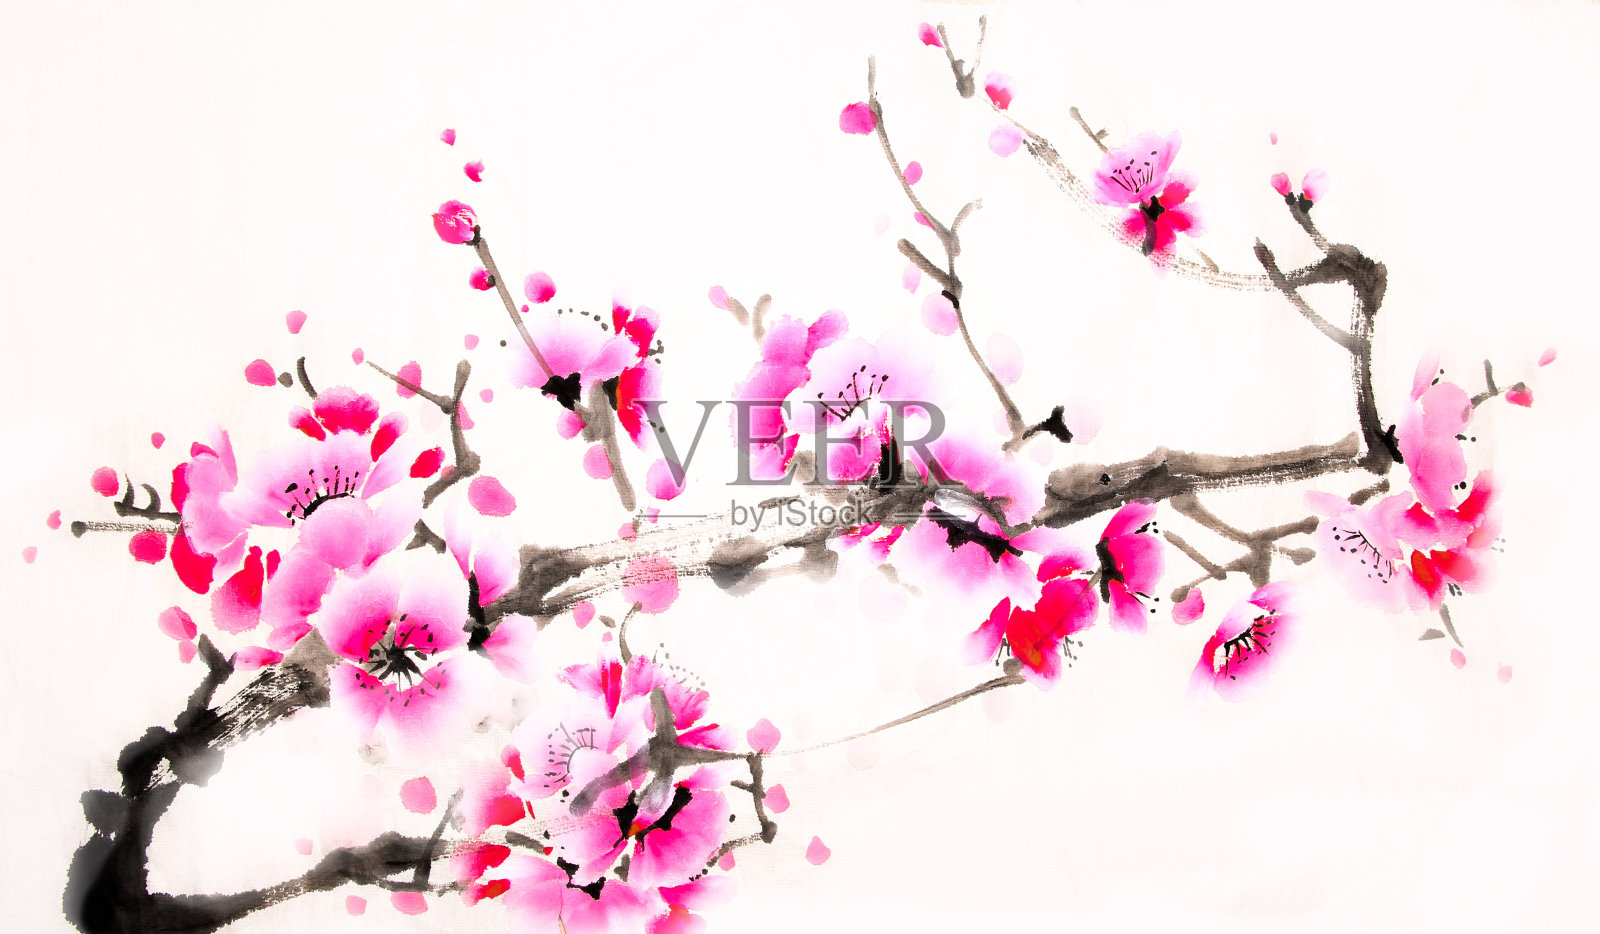 中国传统水墨樱桃画插画图片素材